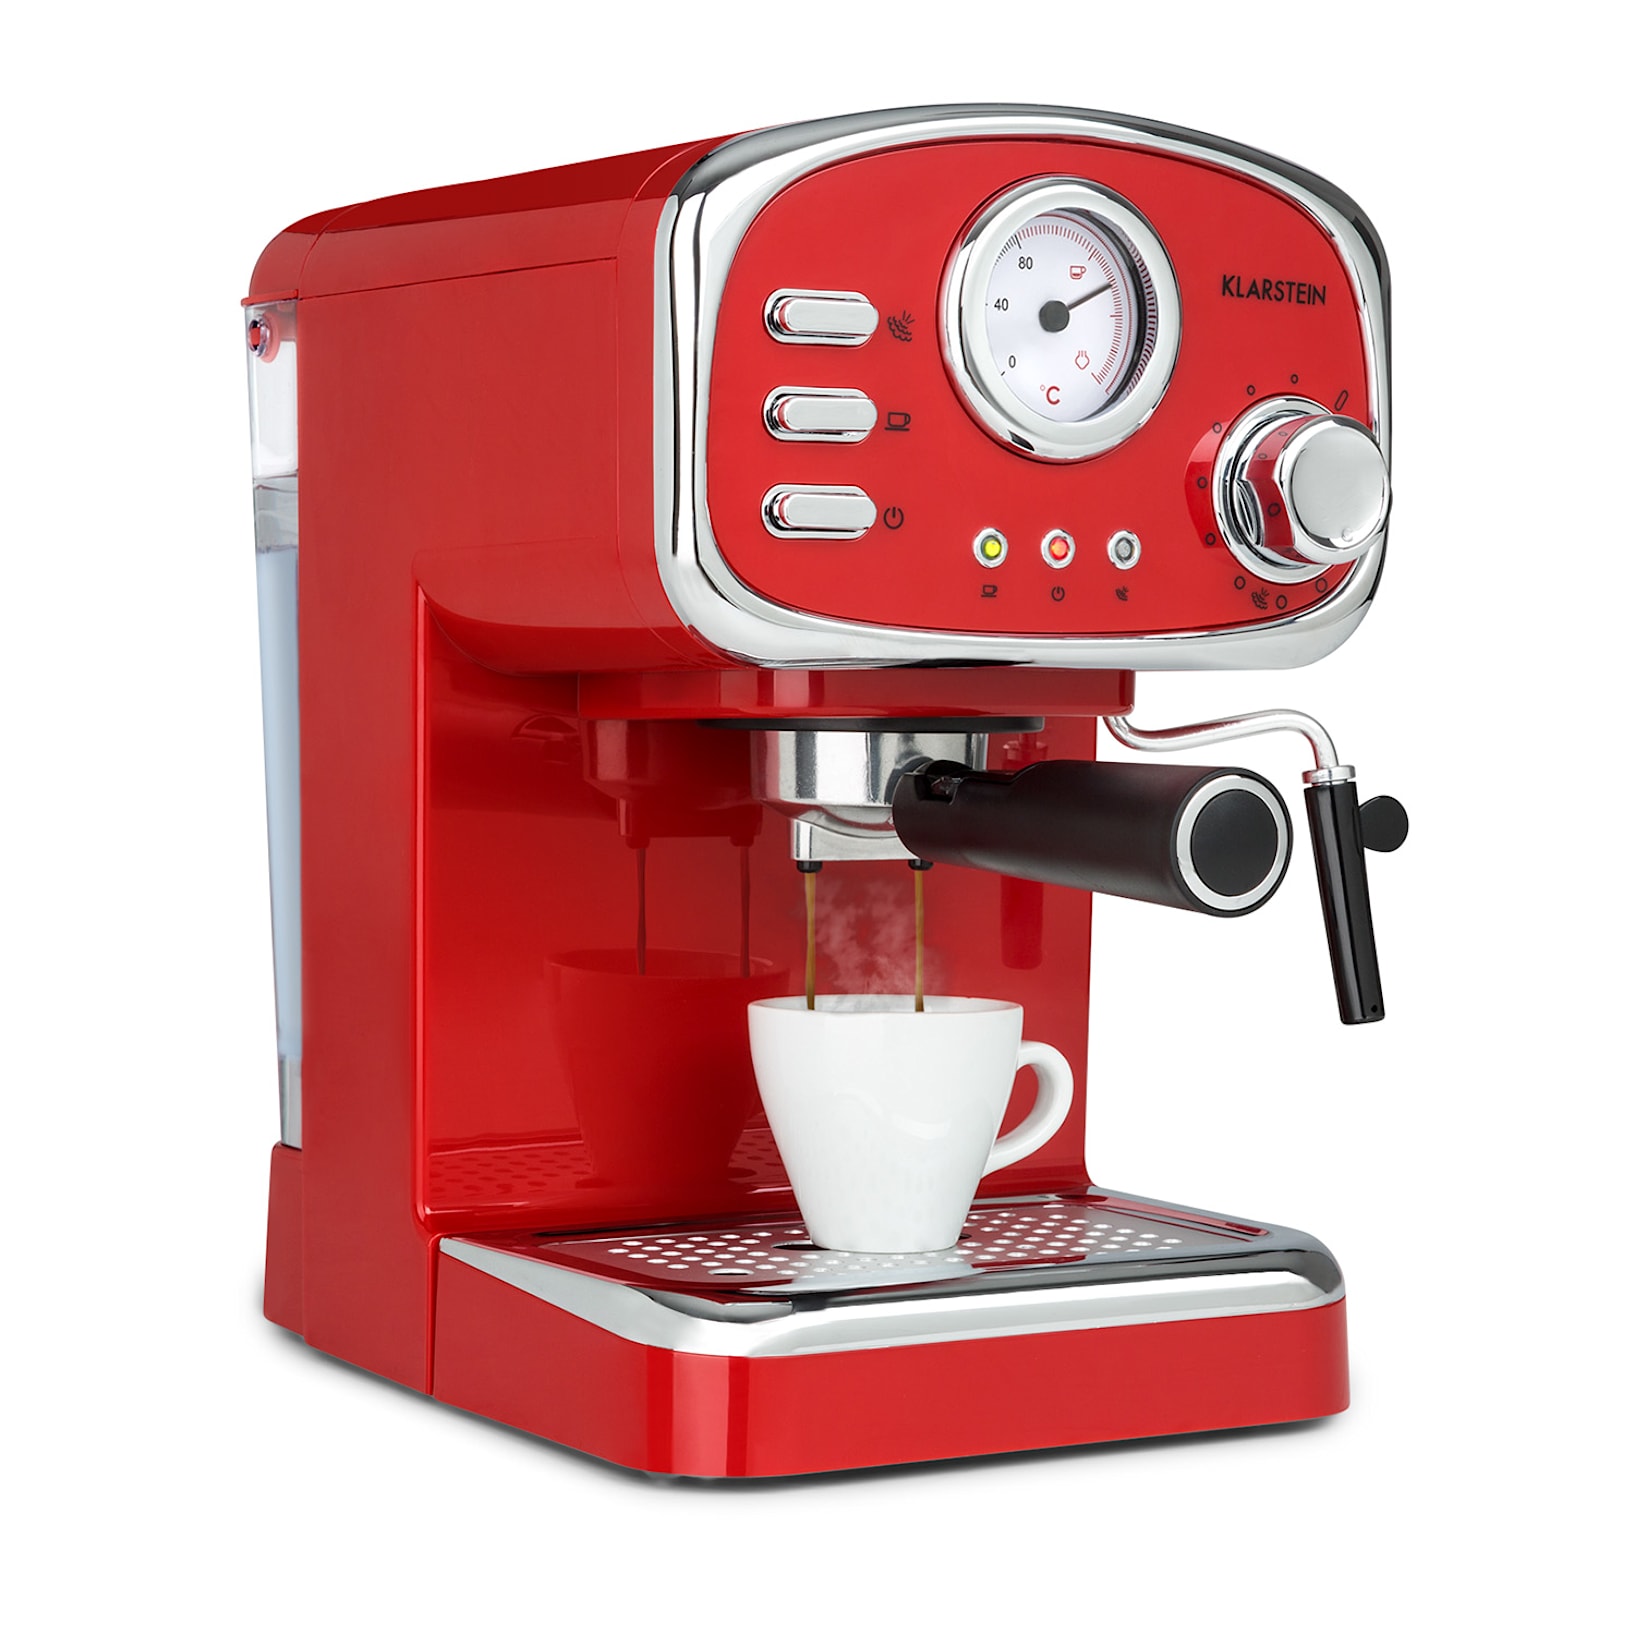 Espressionata Gusto, eszpresszó kávéfőző, 1100W. 15 bar nyomás Piros